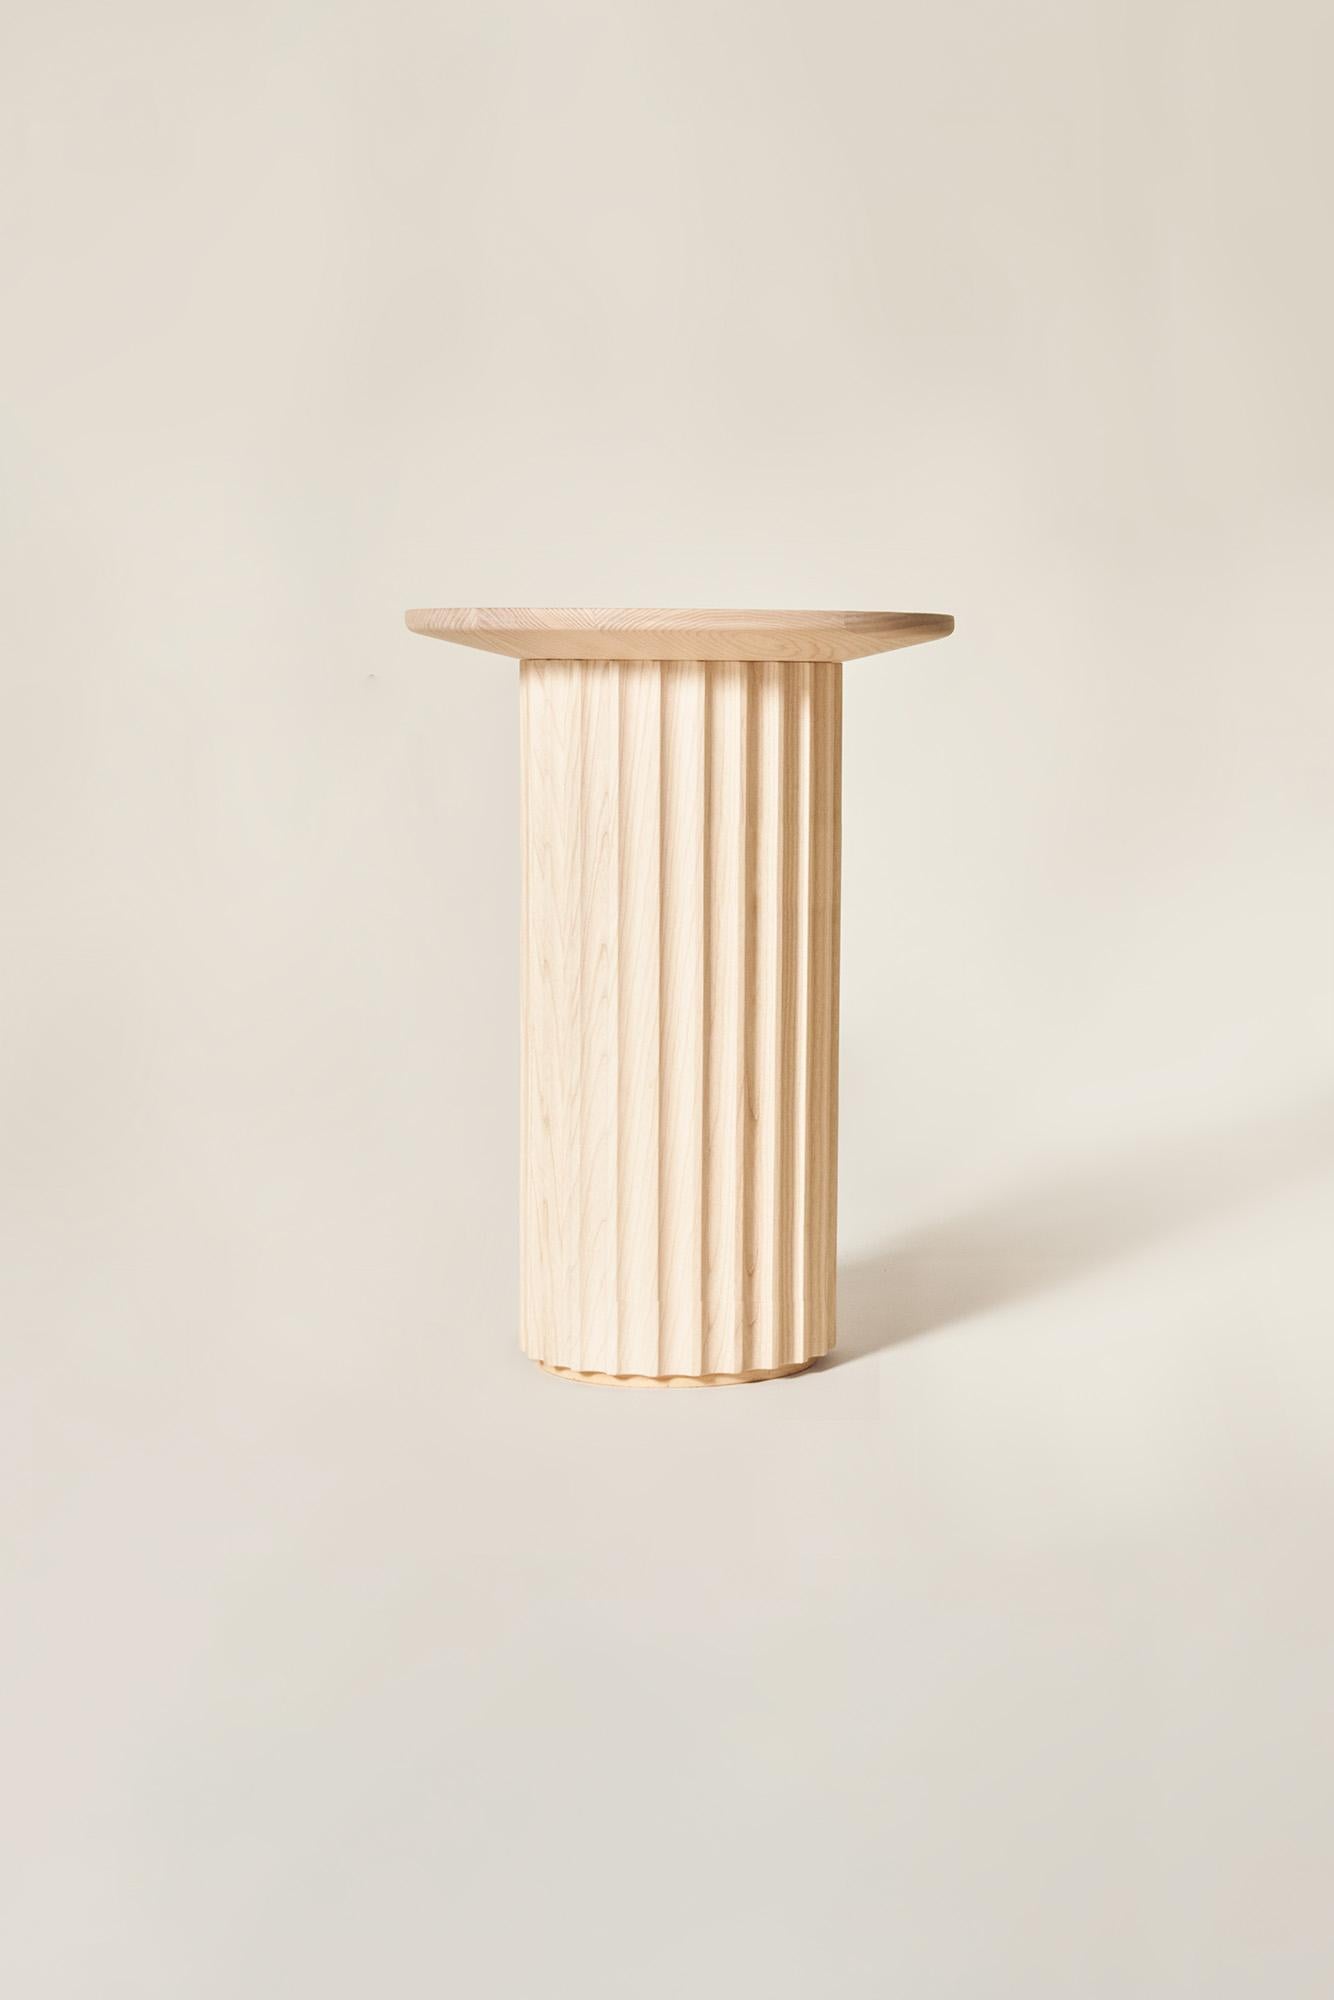 Frêne Table basse Capitello en bois massif, finition naturelle, contemporaine en vente